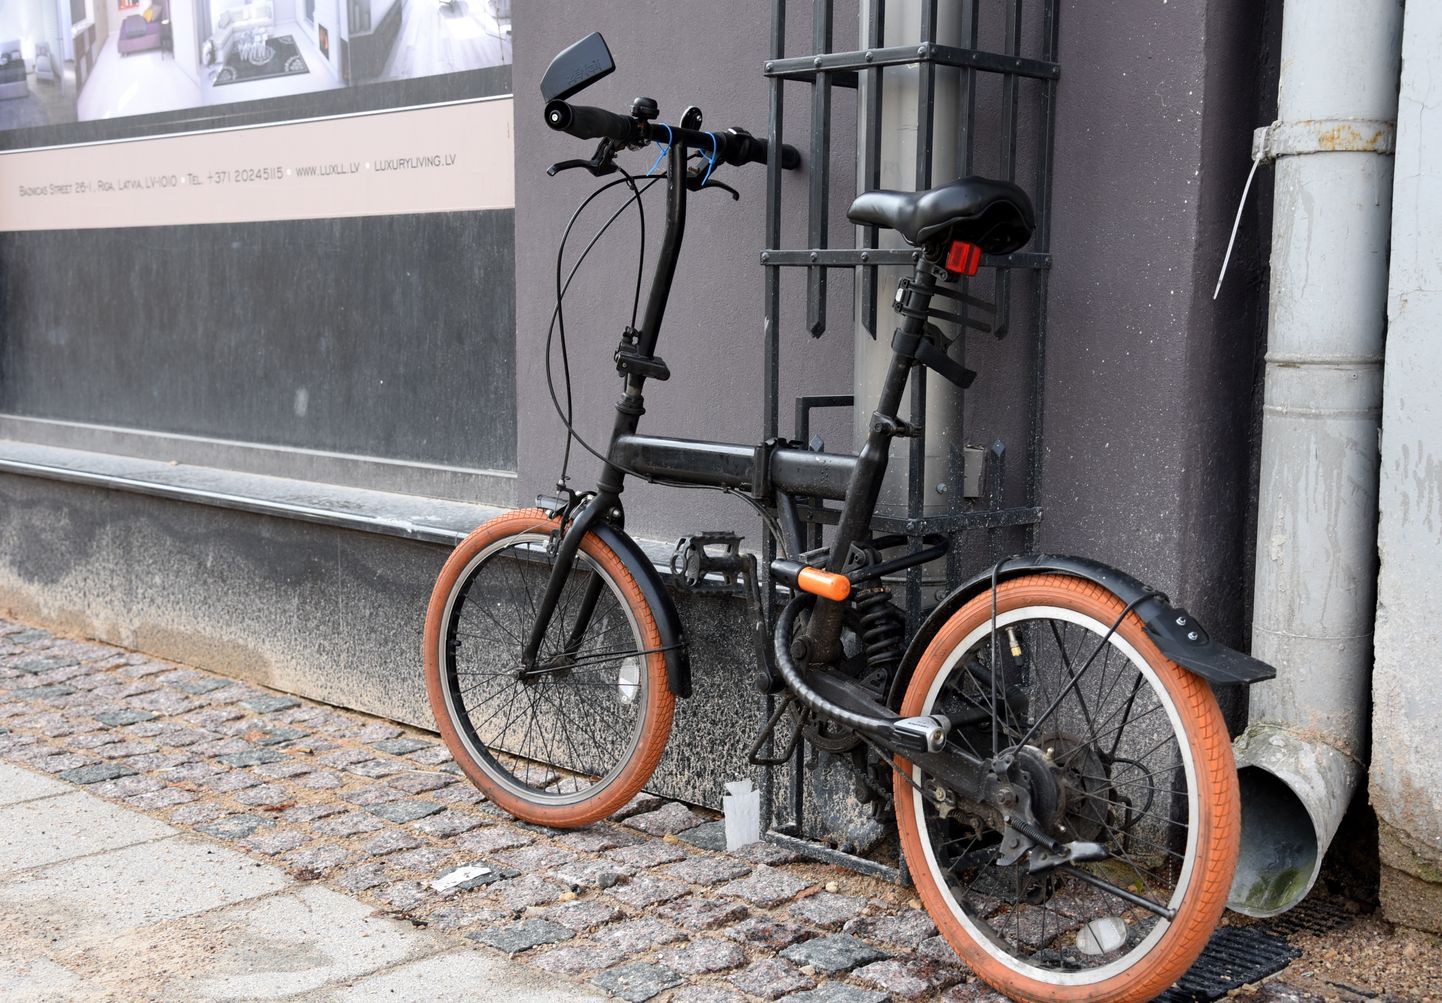 Latvijā norisinās akcija "Diena bez auto", kuras laikā iedzīvotāji tiek aicināti doties savās ikdienas gaitās, izmantojot velosipēdus.